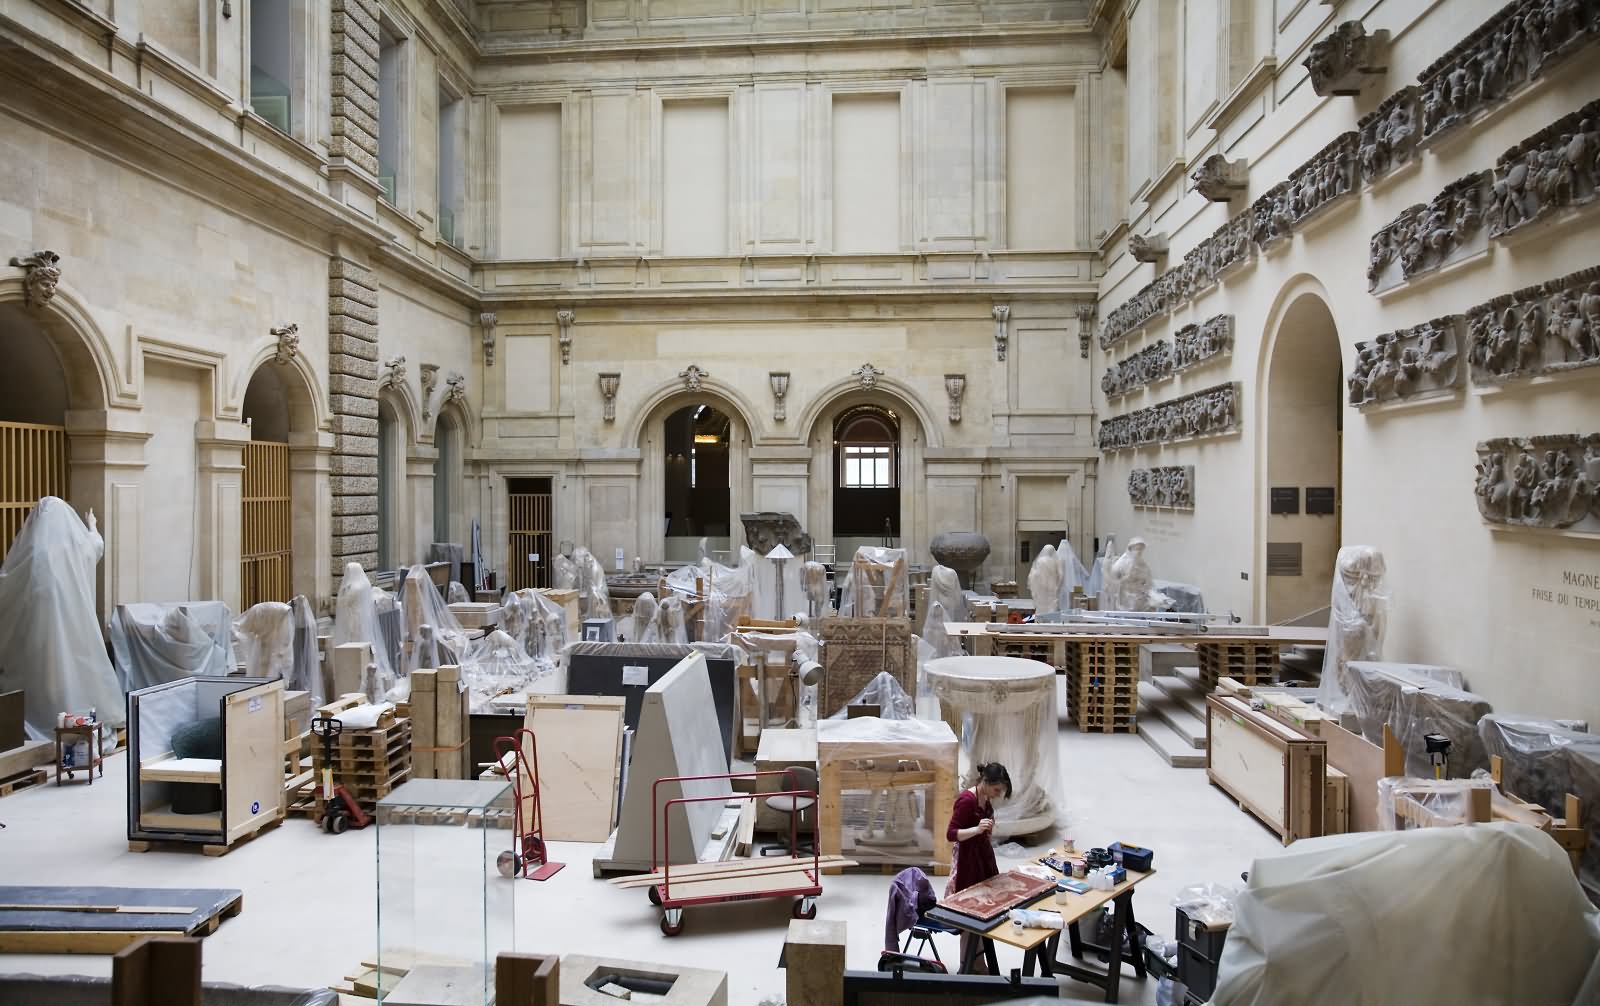 Restoration Workshop Inside The Louvre